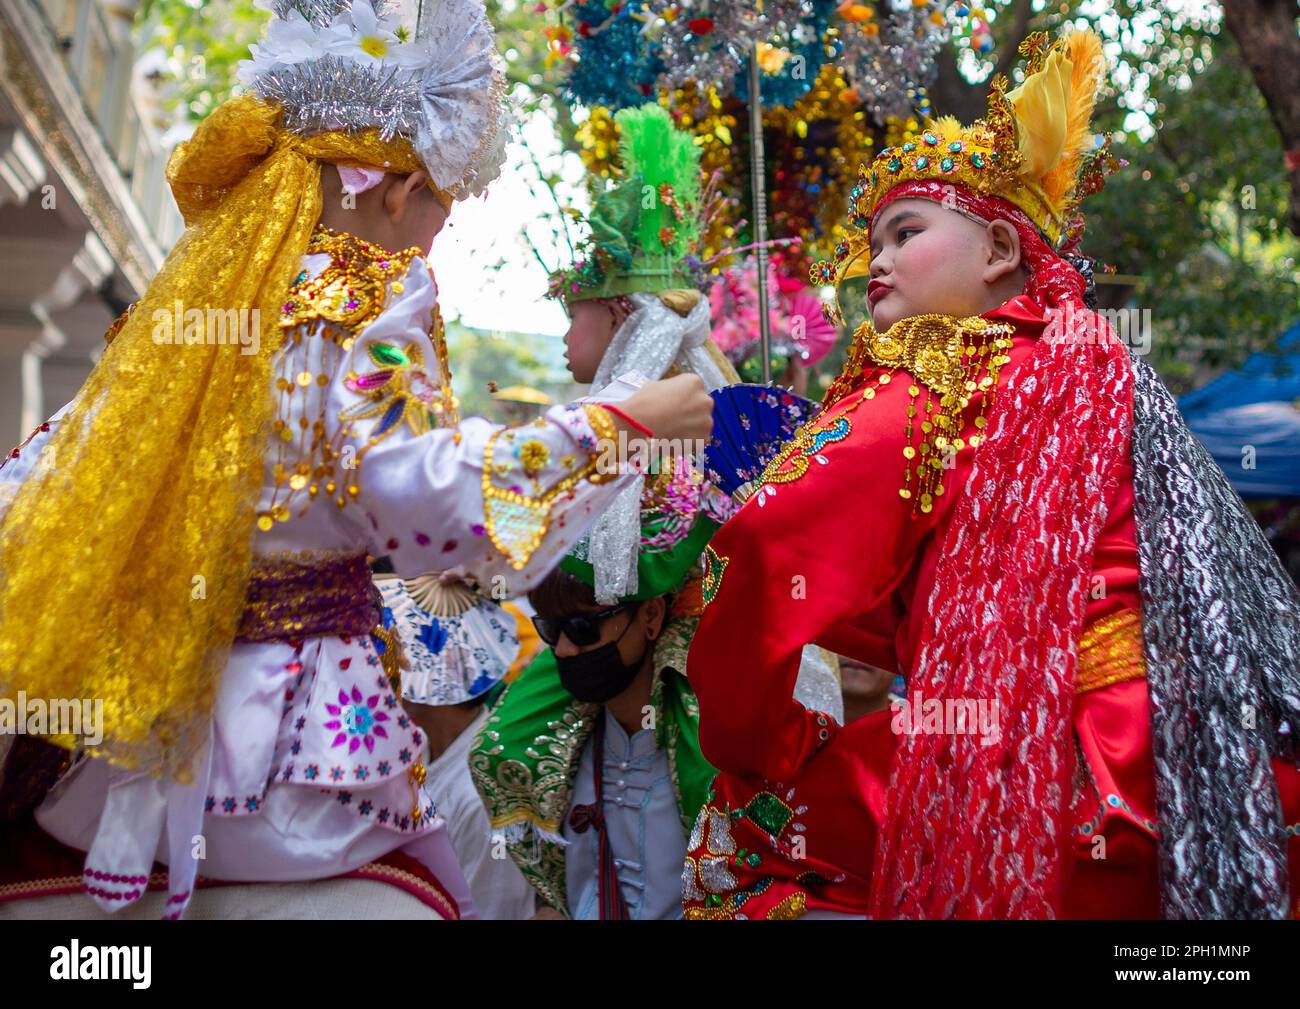 I giovani ragazzi Shan di etnia soprannominata Sang Long vestiti con costumi colorati vengono portati durante una sfilata di processione come parte del festival POY Sang Long, una celebrazione di rito dell'ordinazione dei novizi buddisti al Tempio di Wat Ku Tao. POY Sang Long è una cerimonia di ordinazione dei novizi buddisti tra il popolo Shan chiamato anche tribale Tai Yai in Myanmar e nella parte settentrionale della Thailandia, ma a differenza di qualsiasi altra cerimonia del suo tipo nel paese. I ragazzi di età compresa tra i sette e i 14 anni, noti come "figli di Cristallo", saranno ordinati novizi per imparare le dottrine buddiste per guadagnare meriti ai loro genitori e alle loro famiglie. (PH Foto Stock